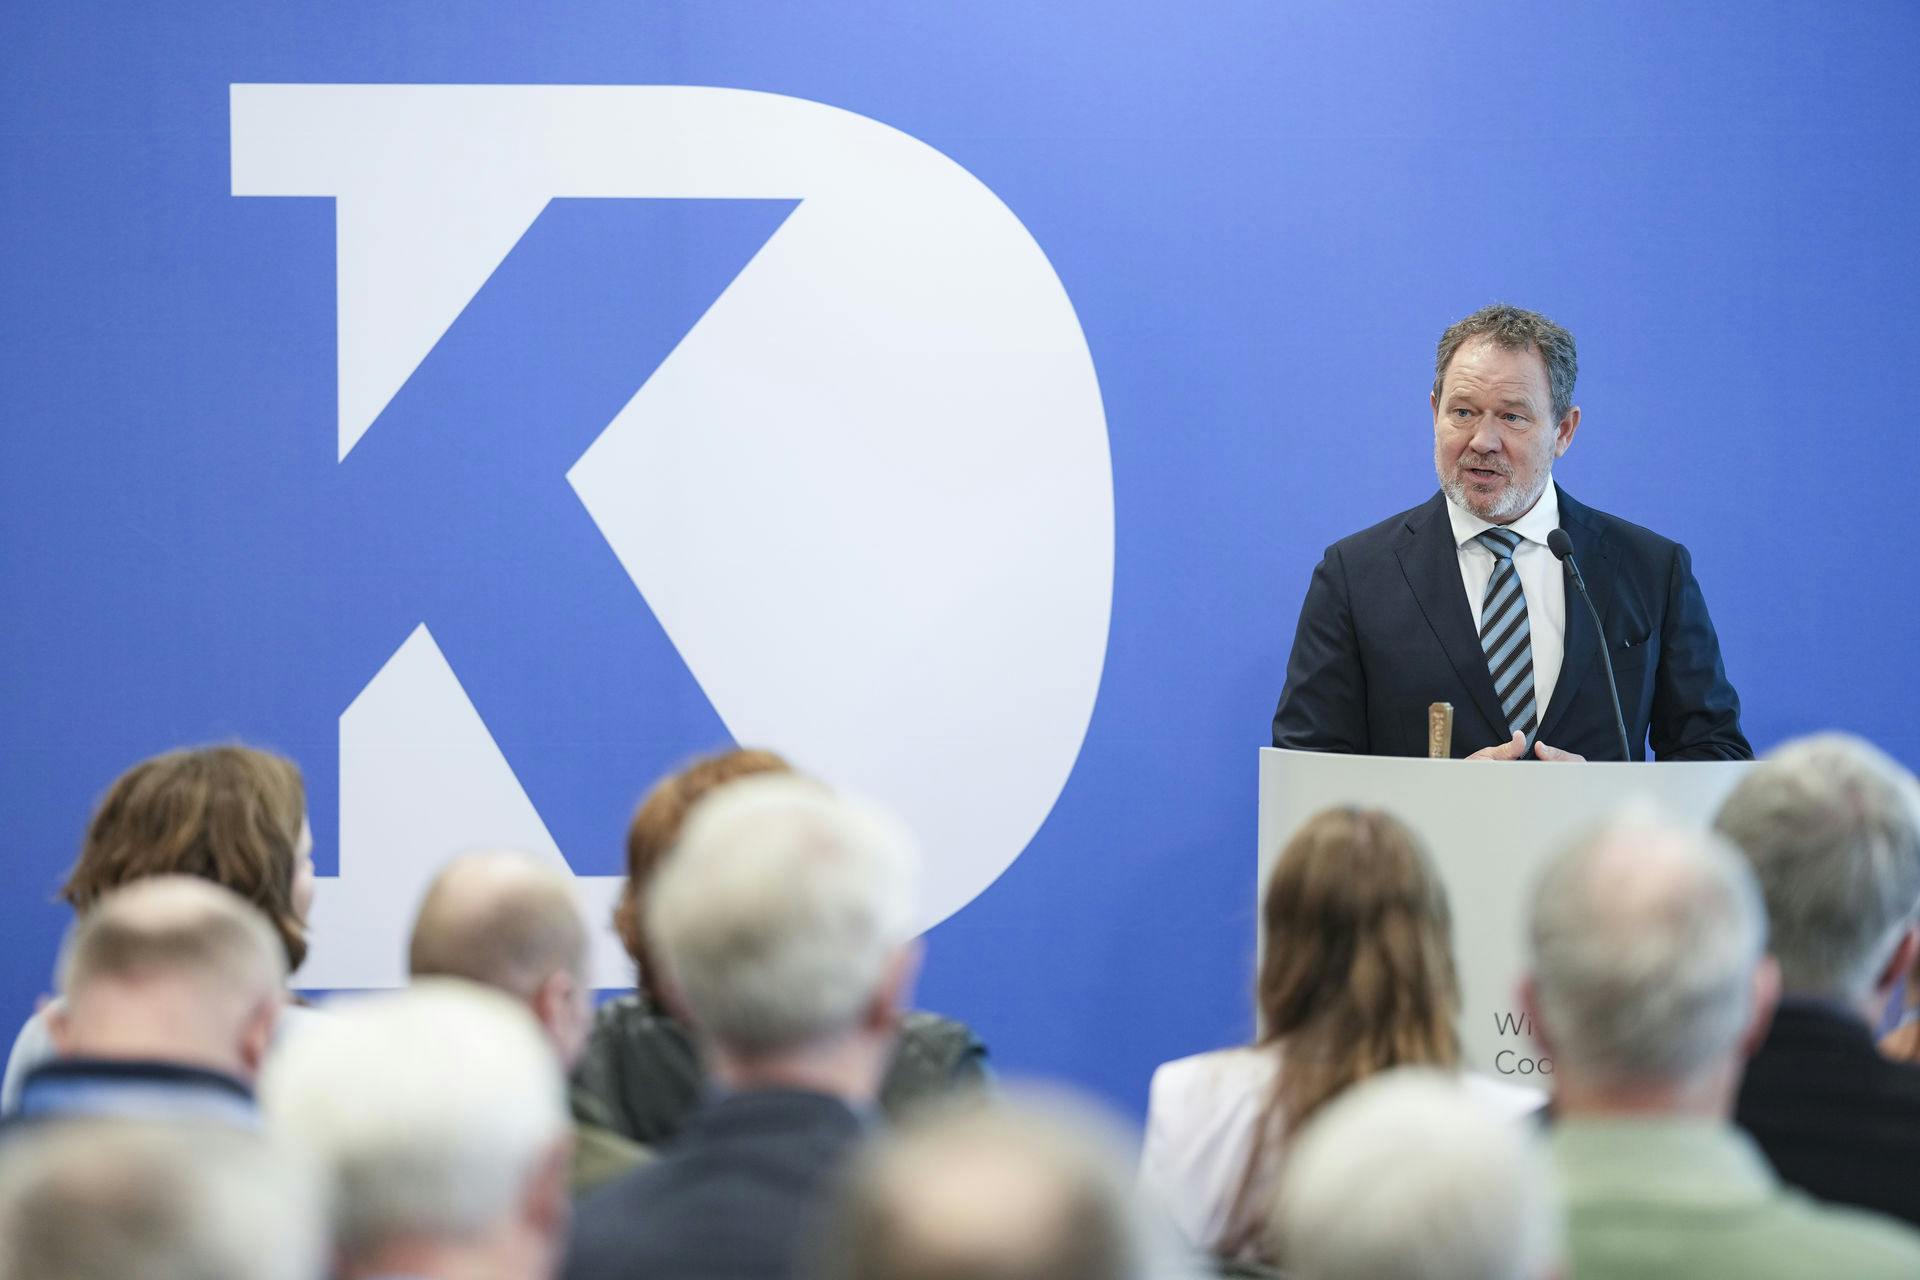 Lørdag den 18. marts blev Jeppe Laurids Hedaa ny formand for Kristendemokraterne.